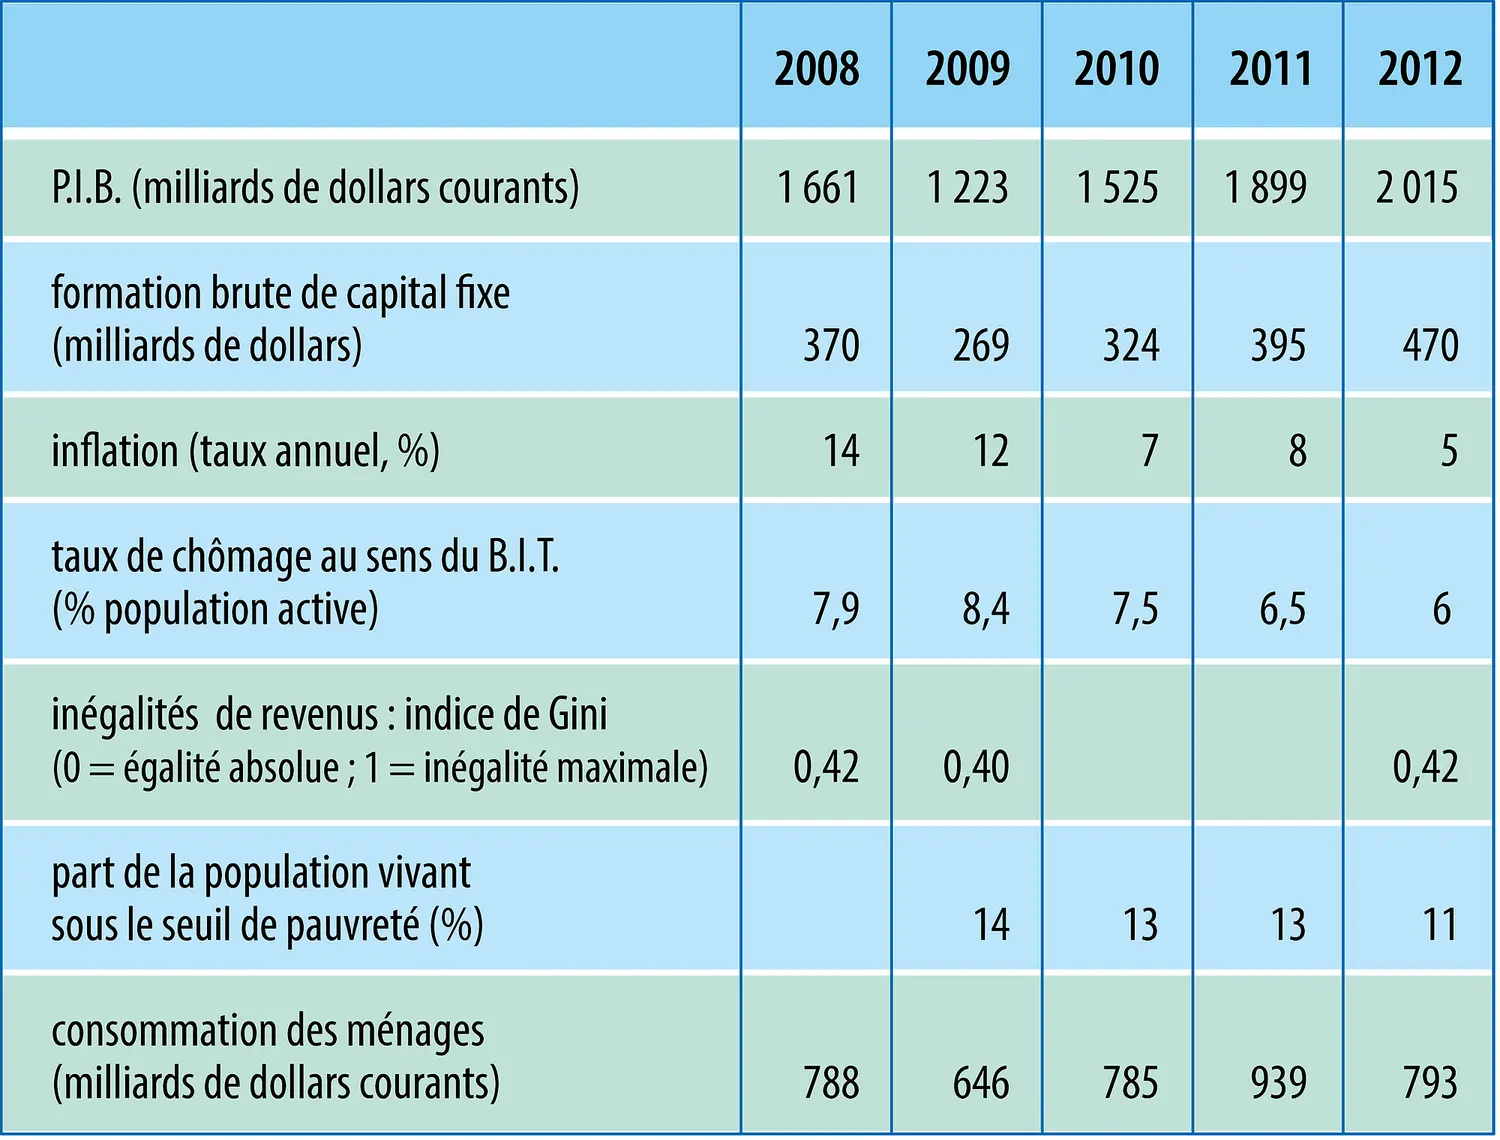 Russie : indicateurs économiques et sociaux (2008-2012)